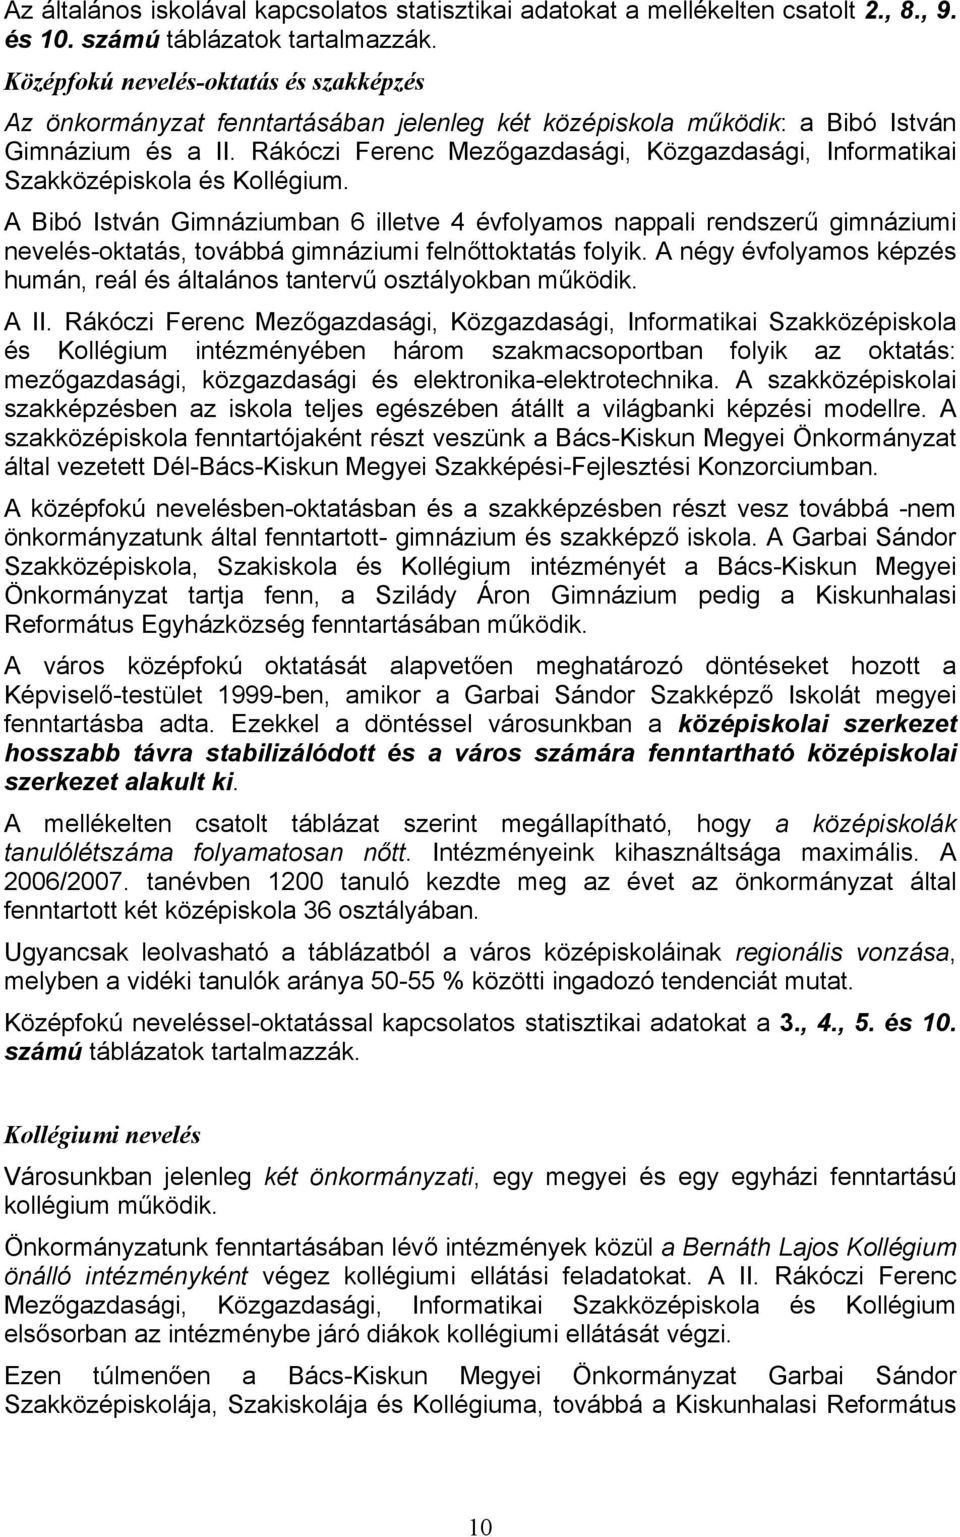 Rákóczi Ferenc Mezőgazdasági, Közgazdasági, Informatikai Szakközépiskola és Kollégium.